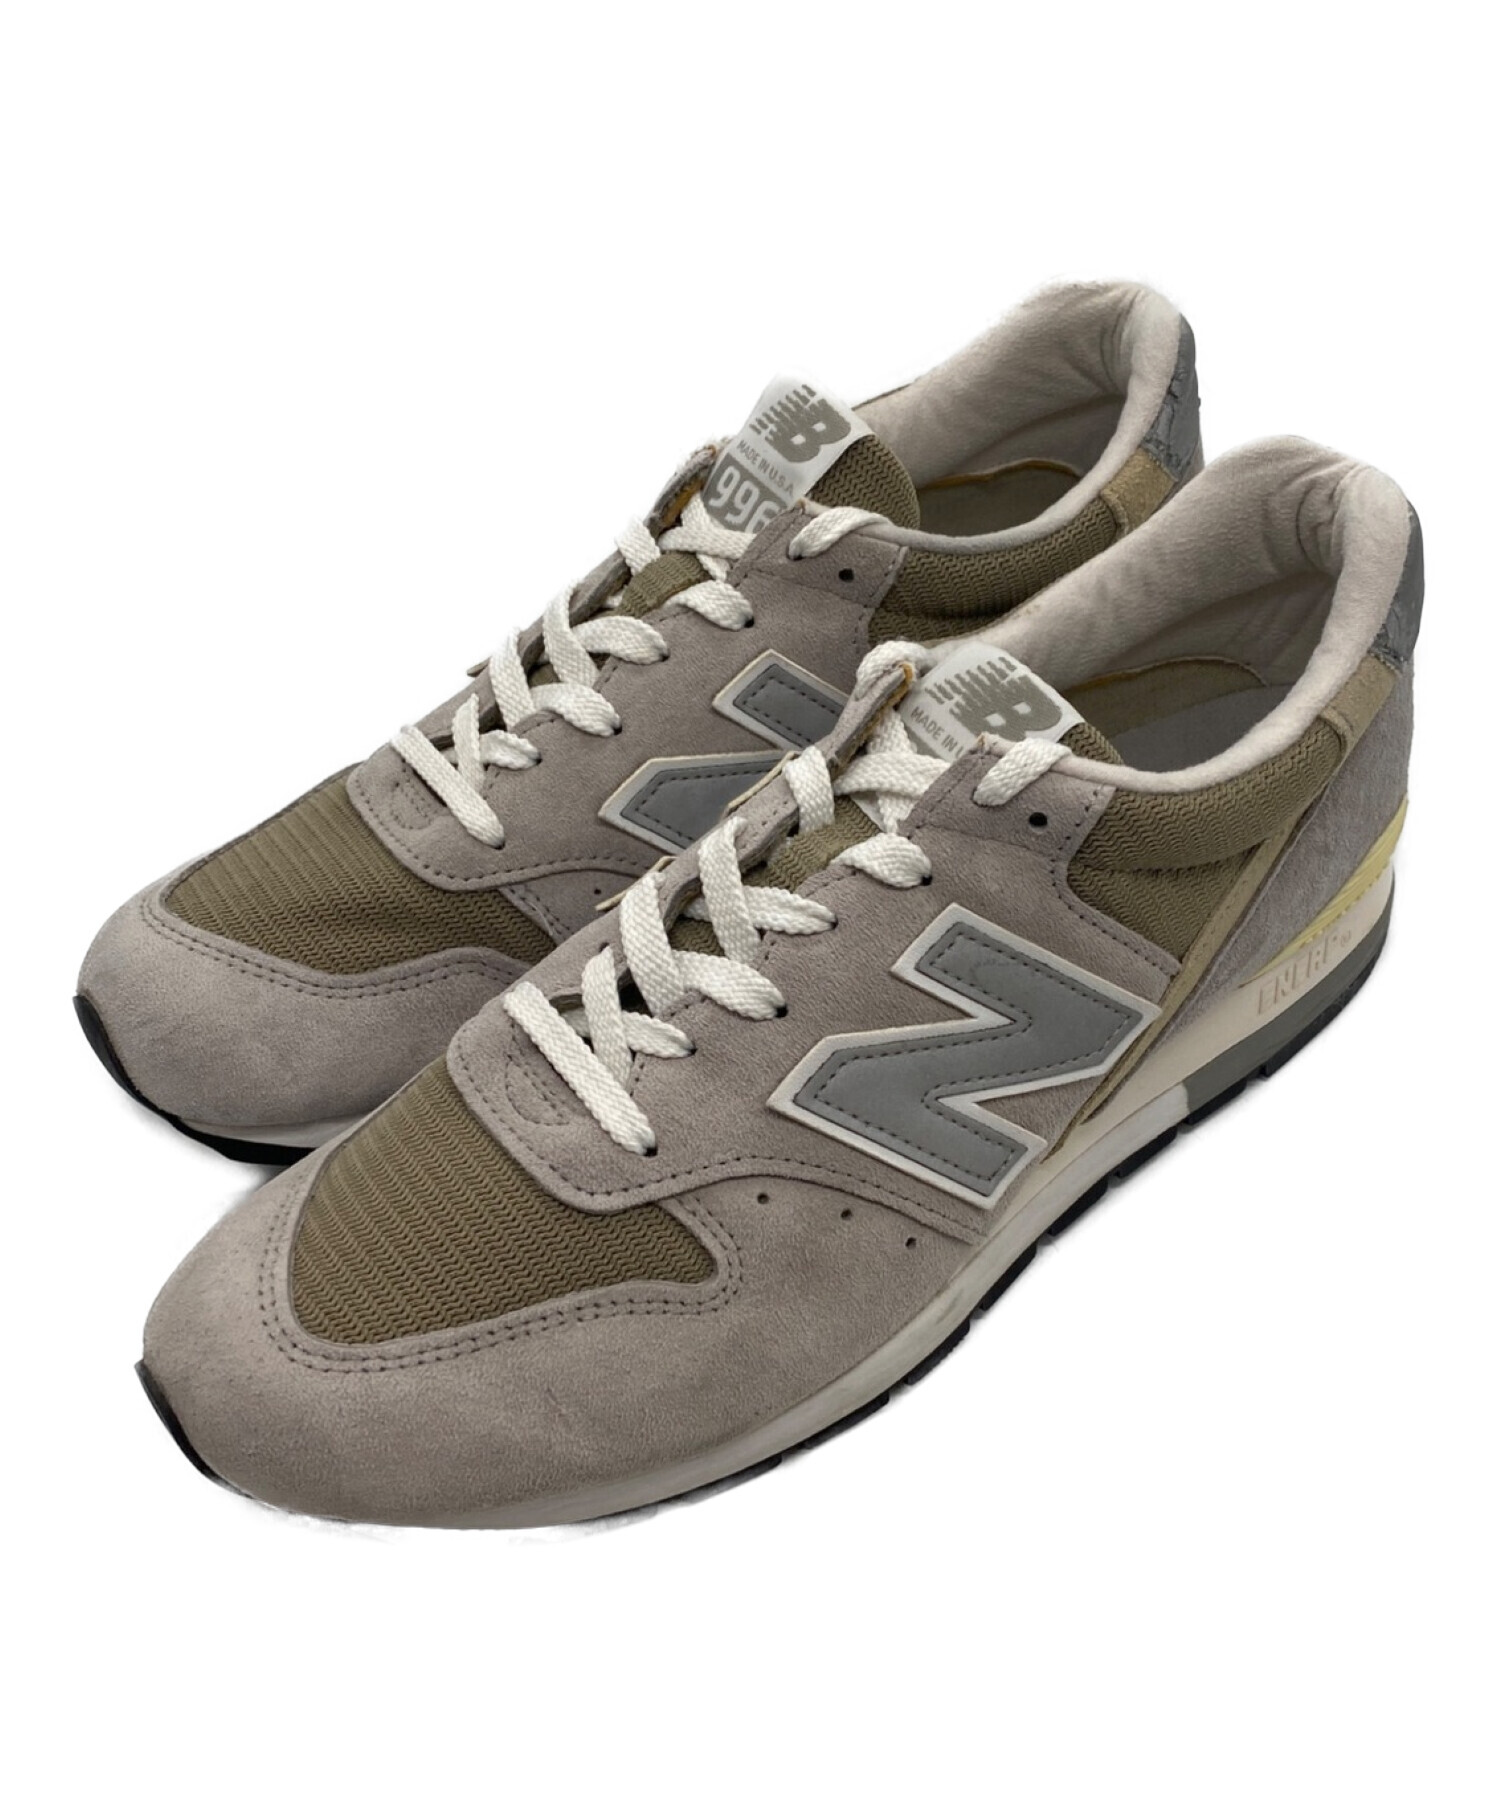 〈New Balance〉M996靴/シューズ